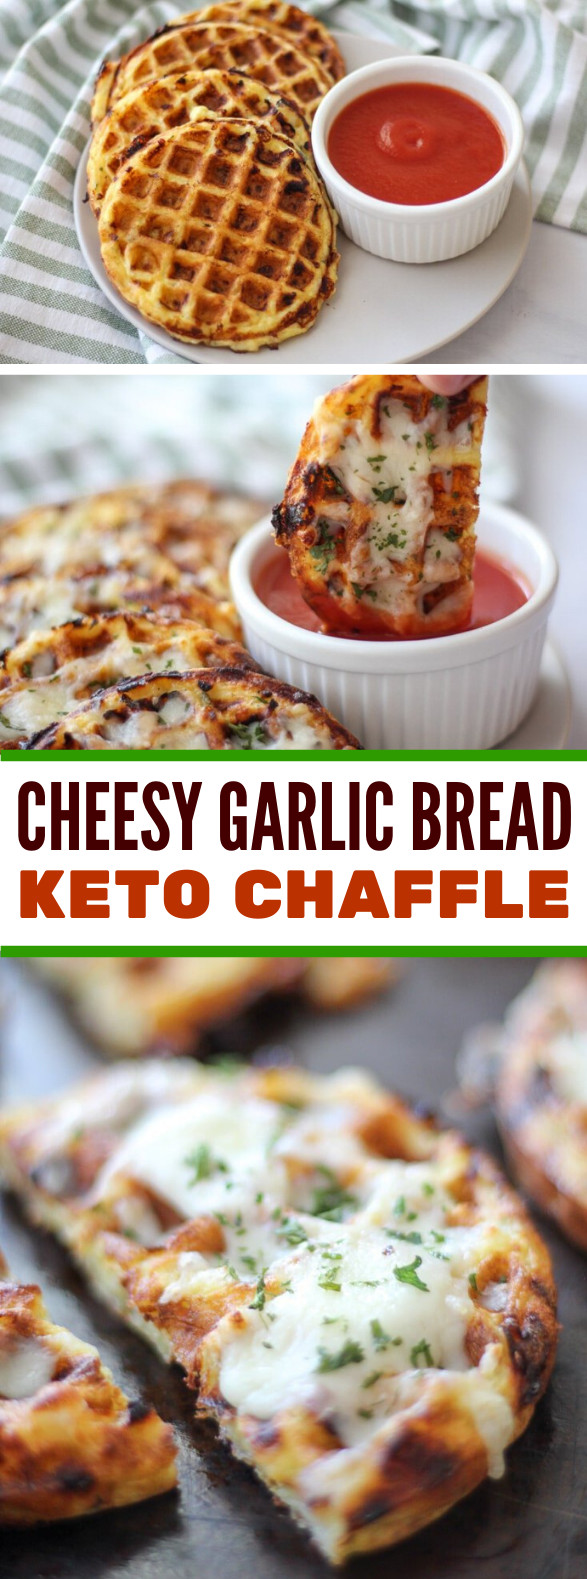 Keto Garlic Bread Chaffle
 EASY KETO CHEESY GARLIC CHAFFLE BREAD healthy appetizers